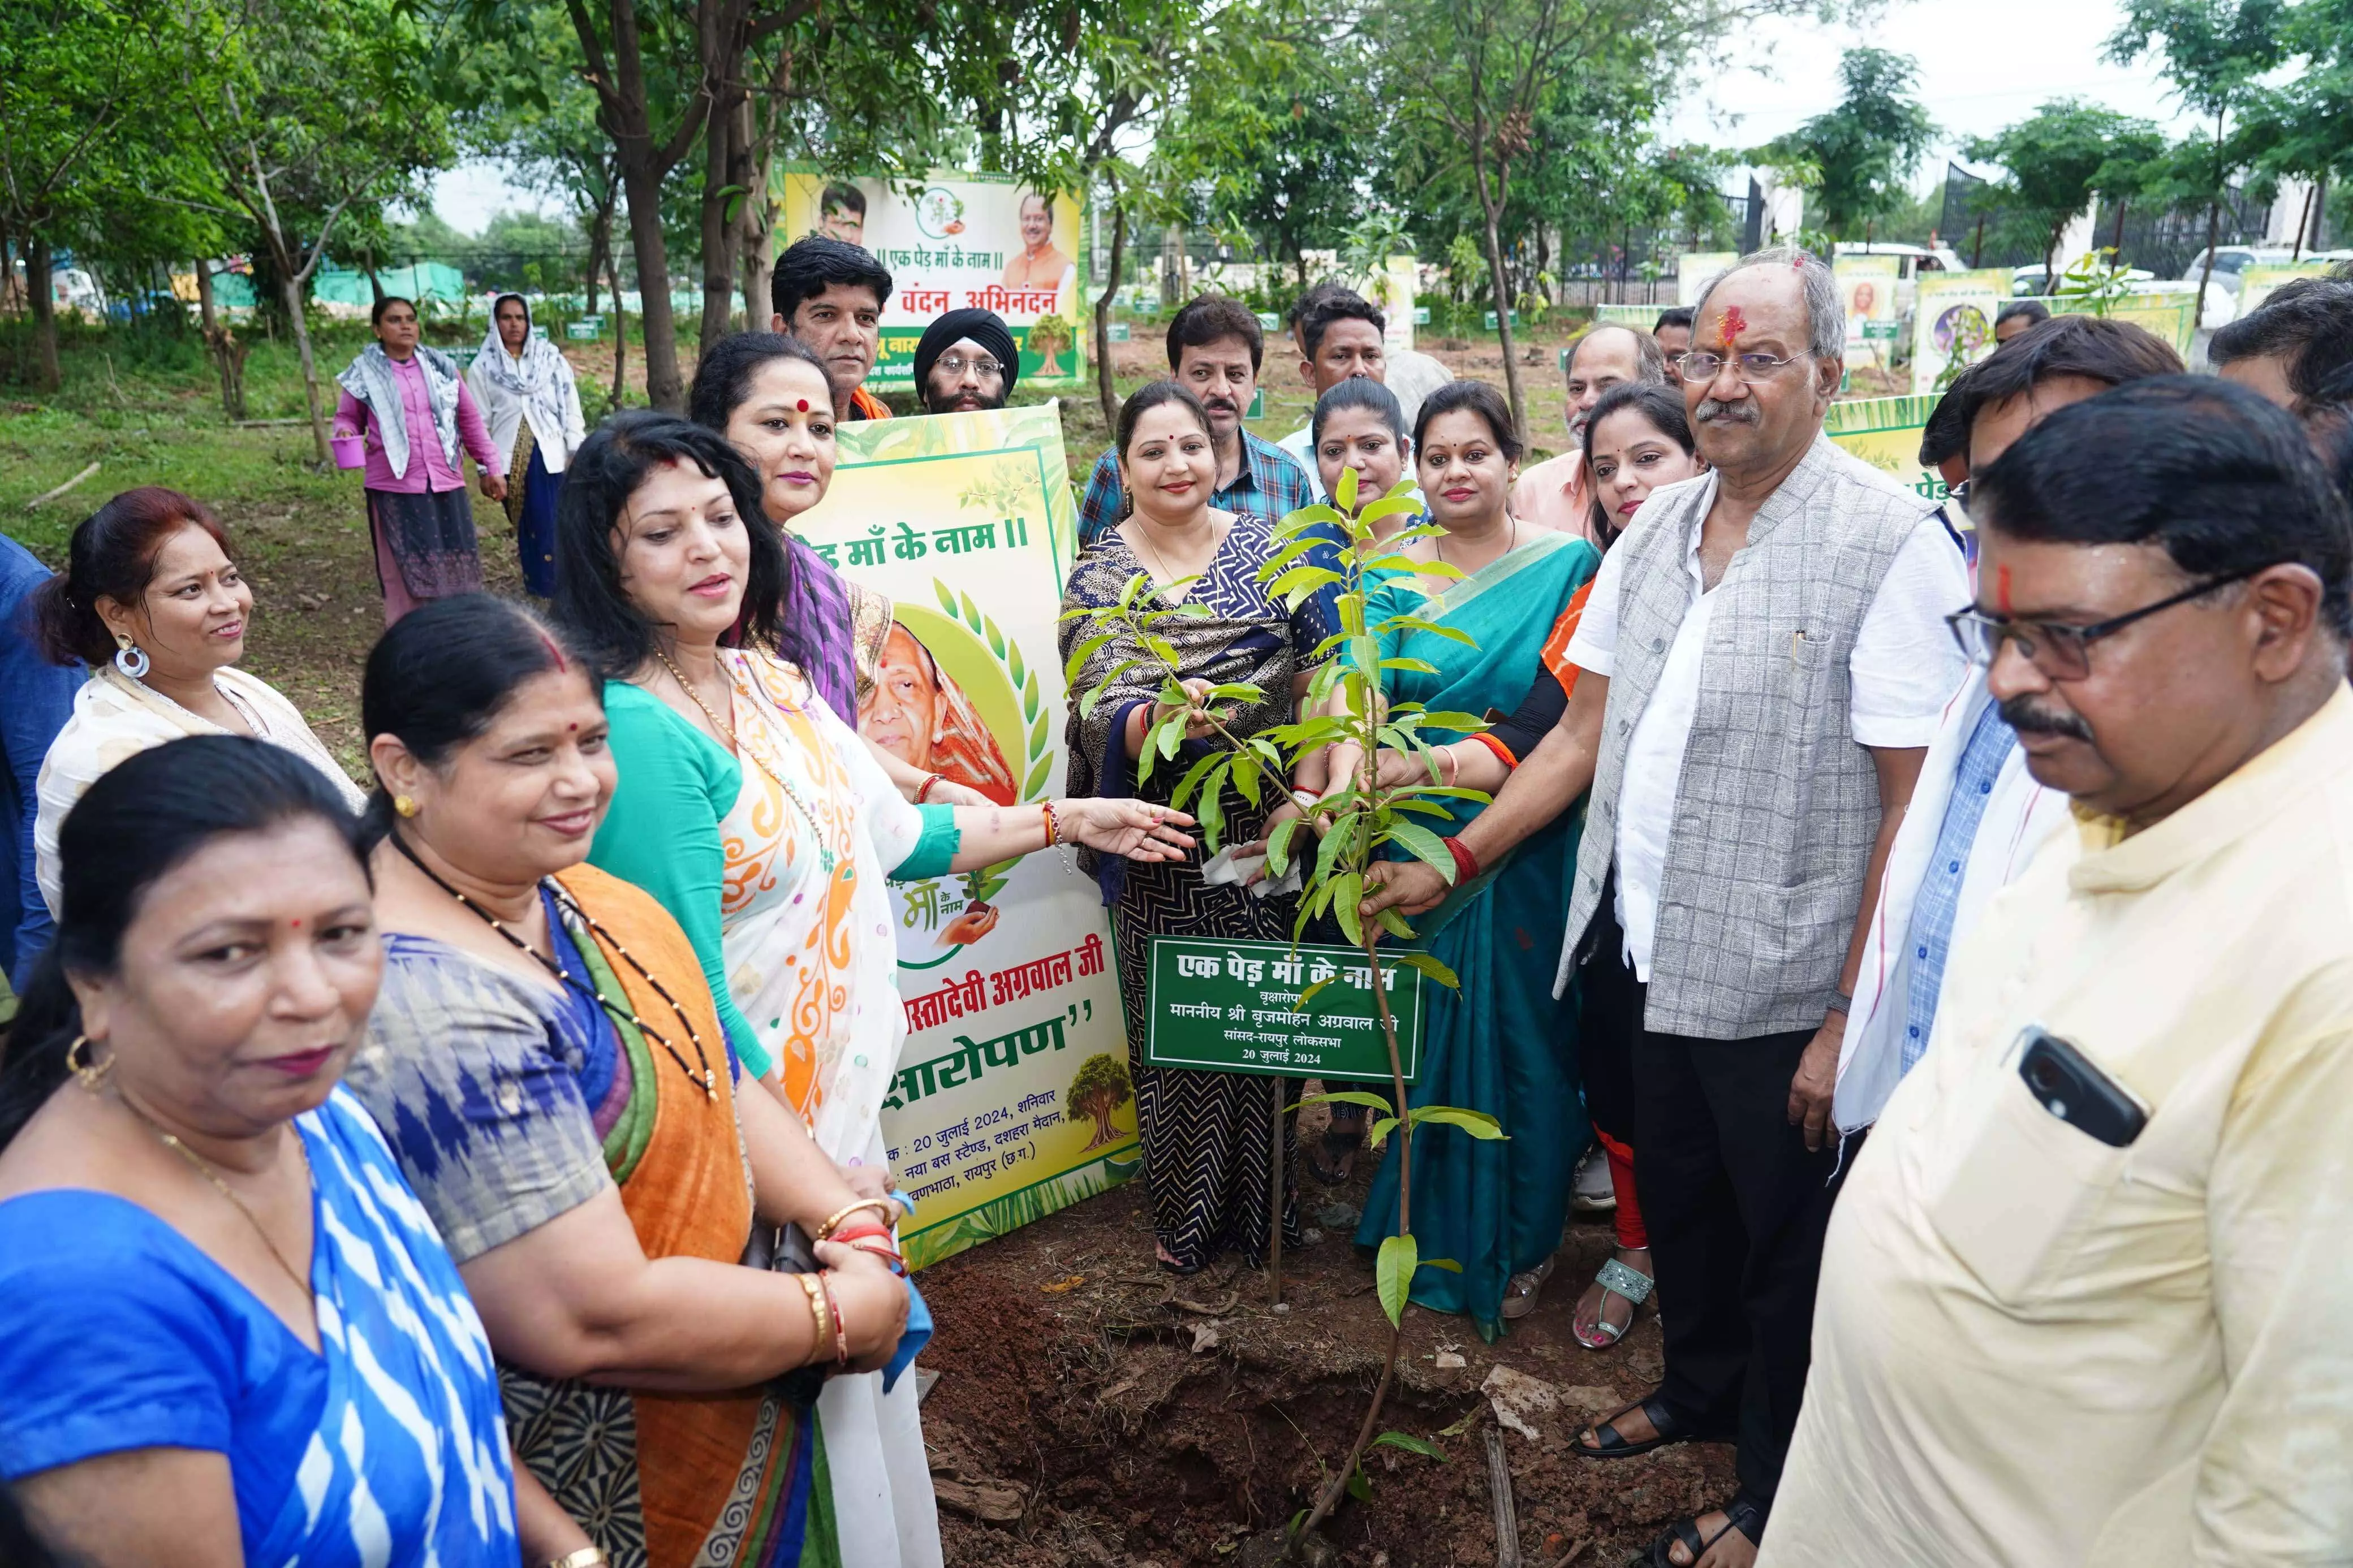 हम सब संकल्प लें कि हम पौधा लगाकर उसे पेड़ बनाएंगे उसको संरक्षित करेंगे: Brijmohan Agarwal